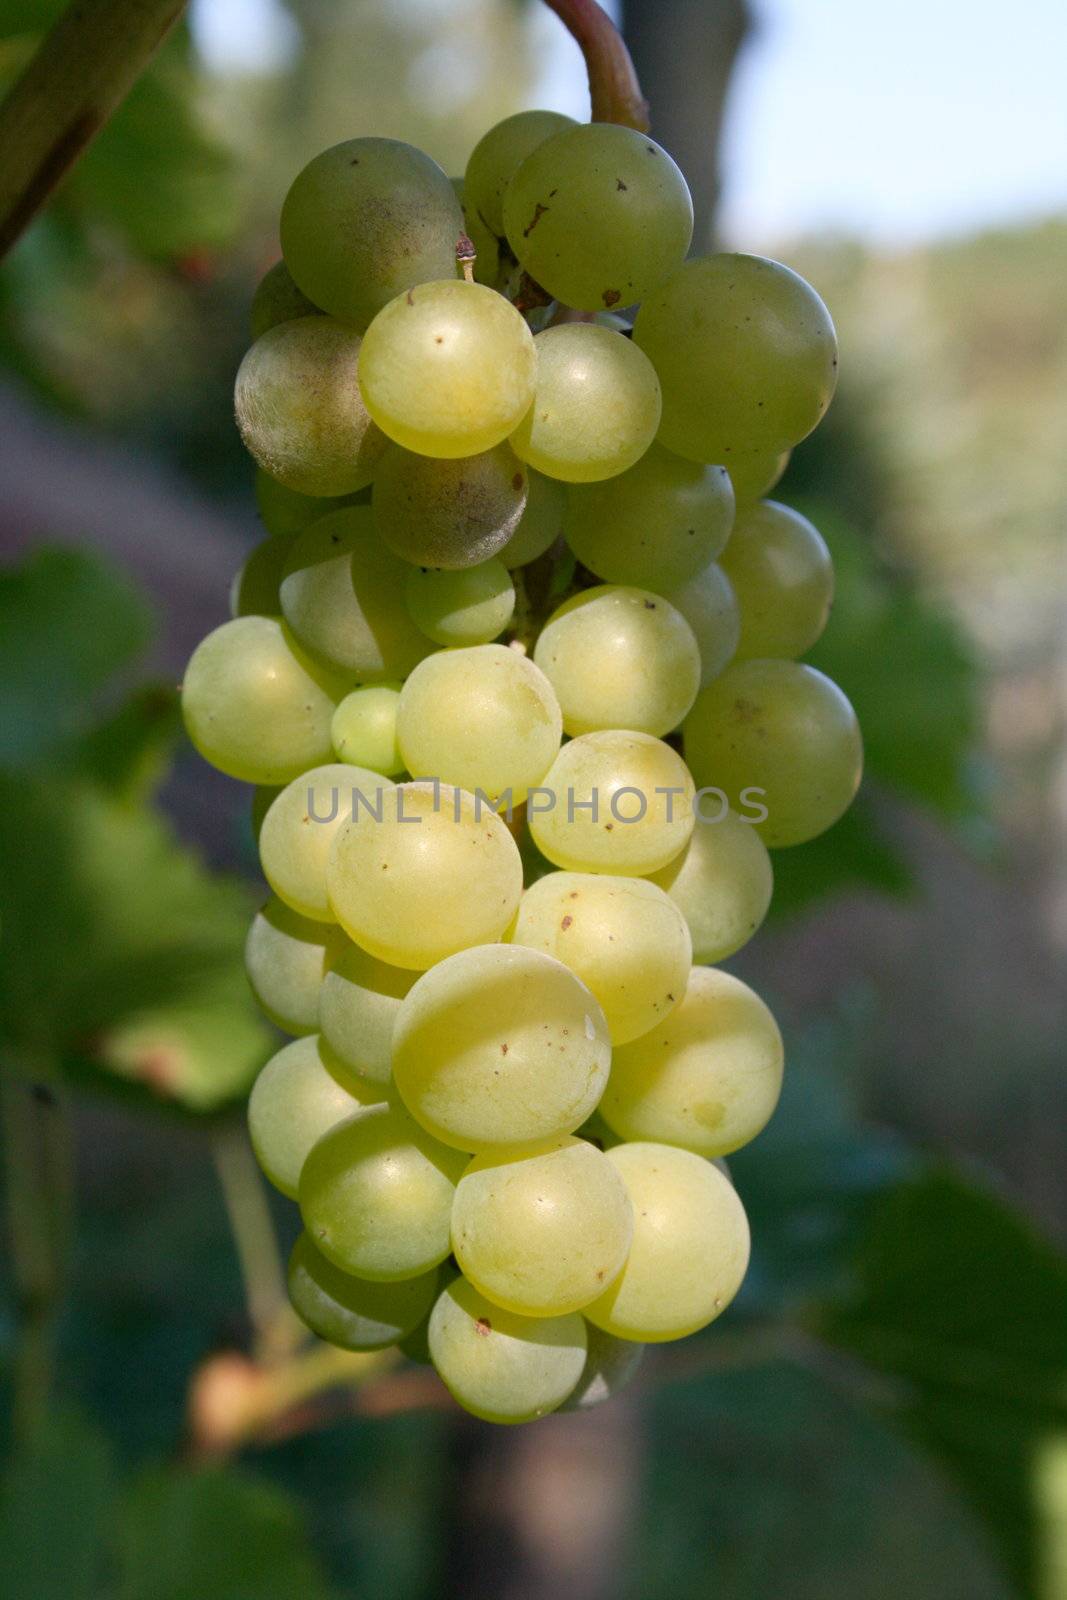 Trauben für Weißwein am Rebstock,bereit bereit zur Ernte  	
White wine grapes on the vine, ready Ready for harvest